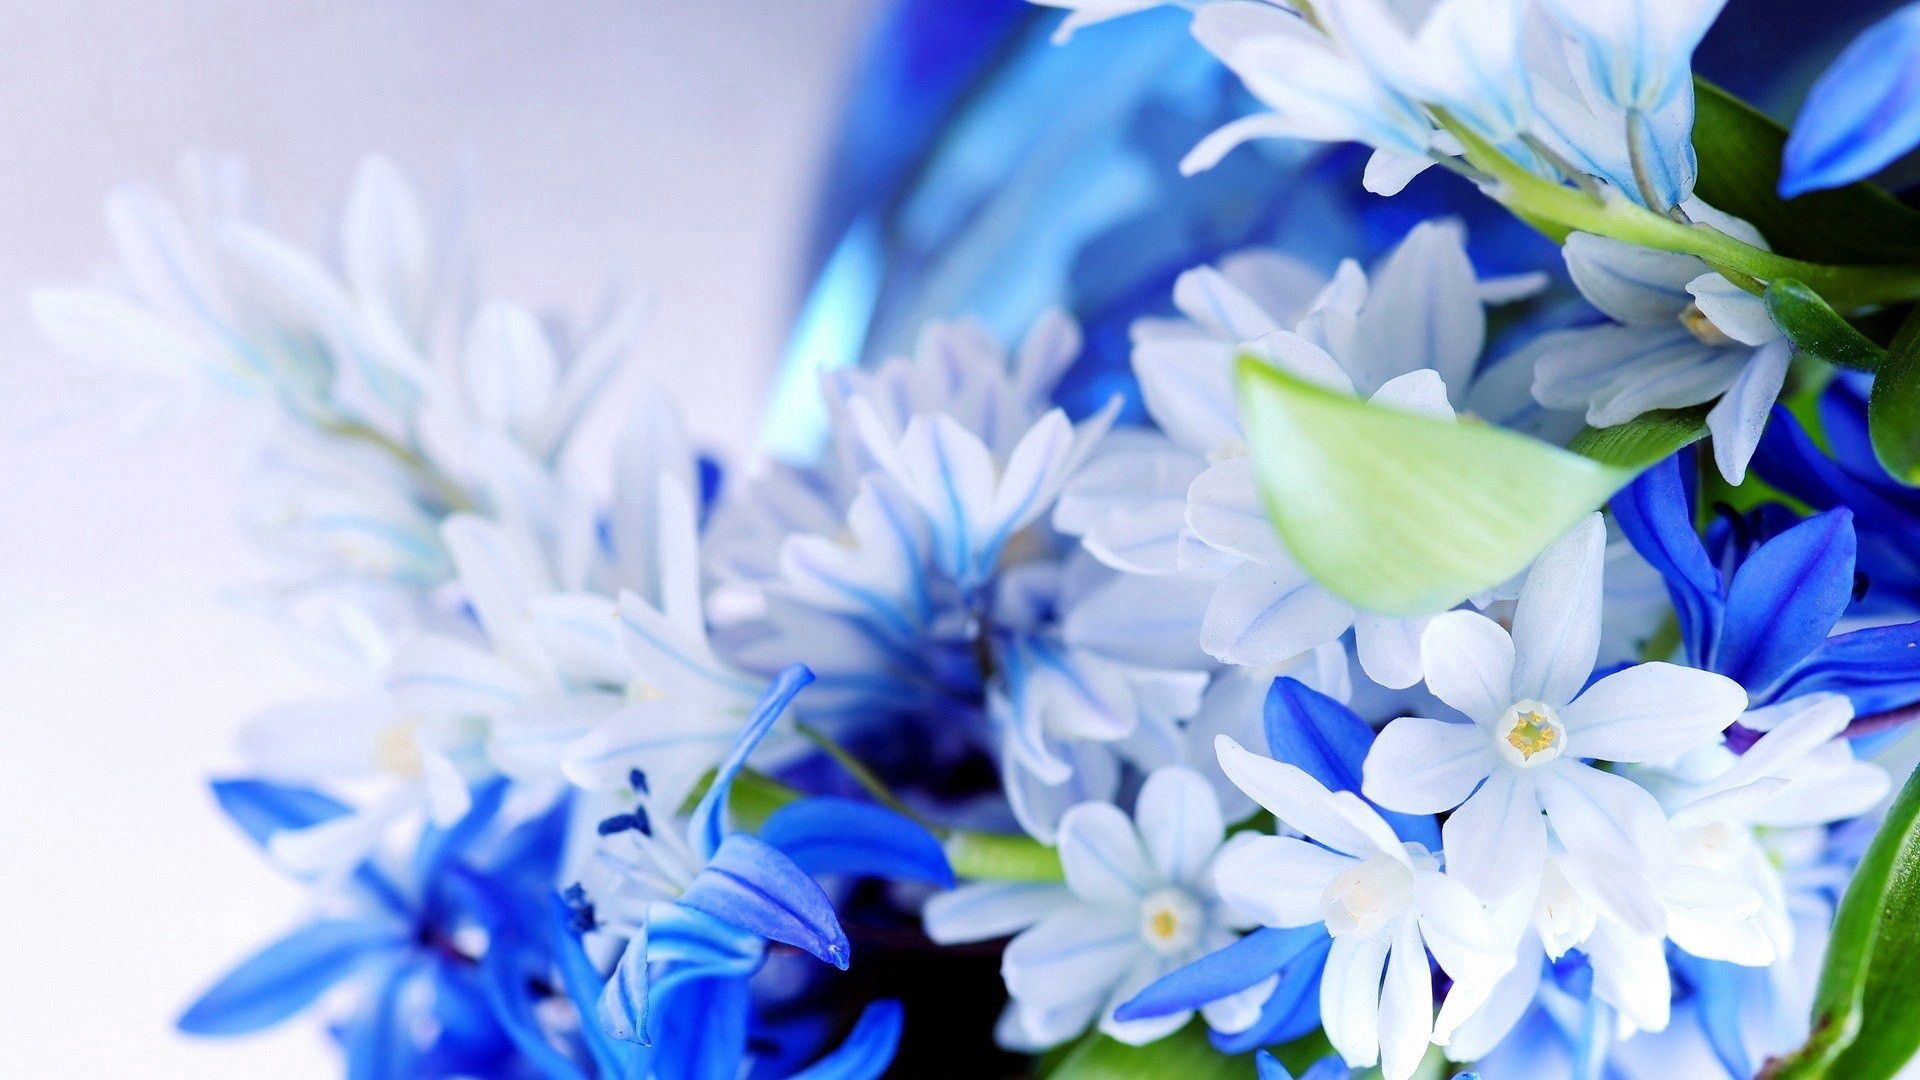 156944 免費下載 白色 手機壁紙，花束, 花瓣, 蓝色的, 蓝色 白色 圖像和手機屏保